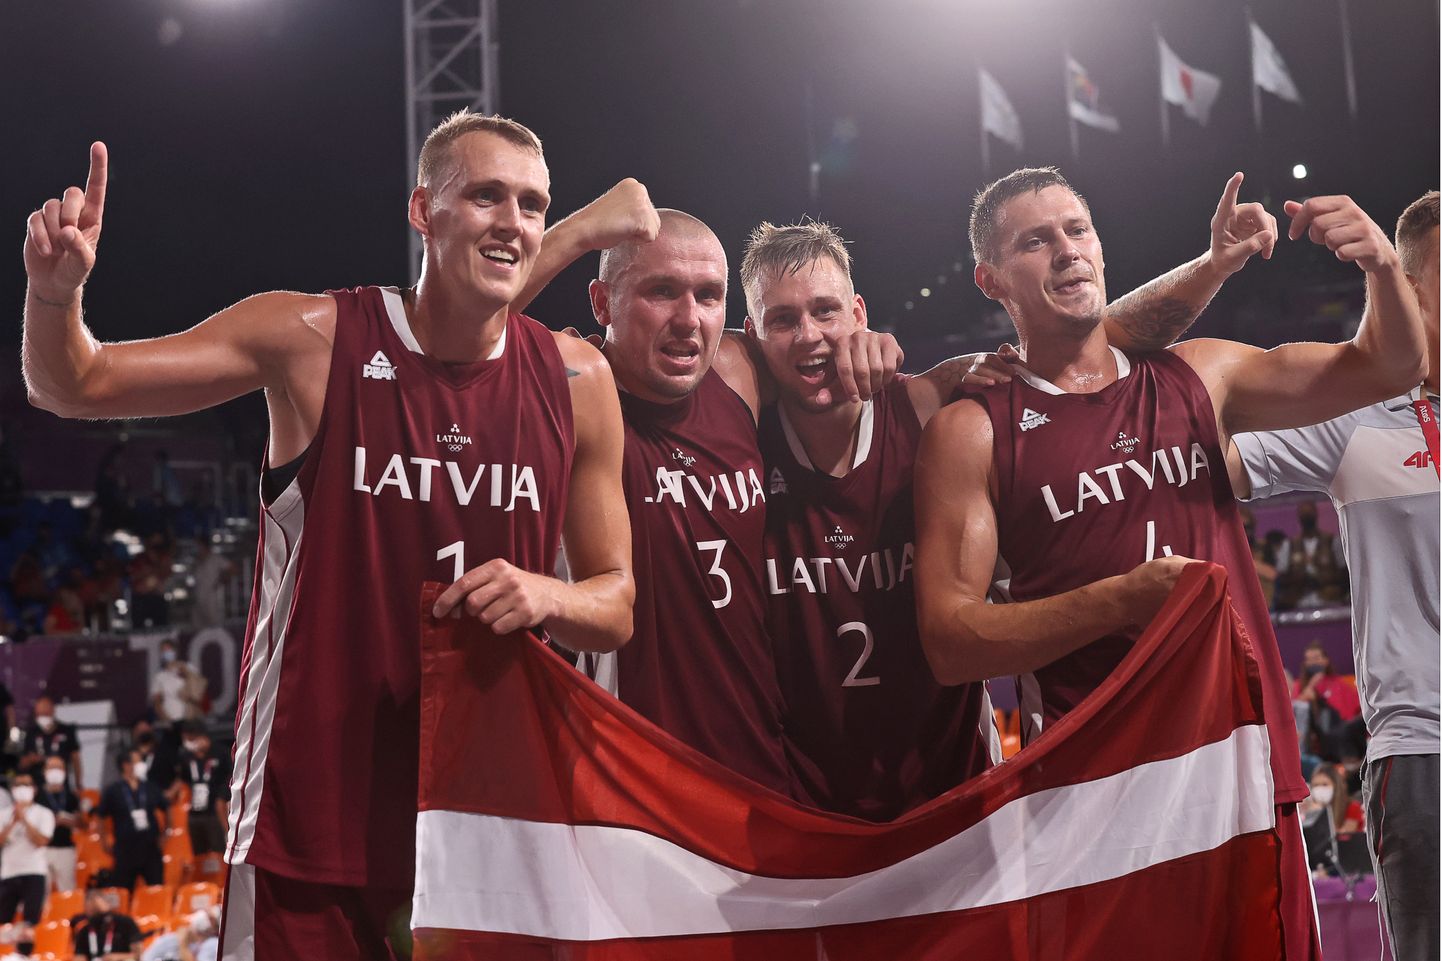 Läti olümpiavõitjatest 3x3 korvpallurid. Alates vasakult: Nauris Miezis, Edgars Kruminš, Karlis Lasmanis ja Agnis Čavars.